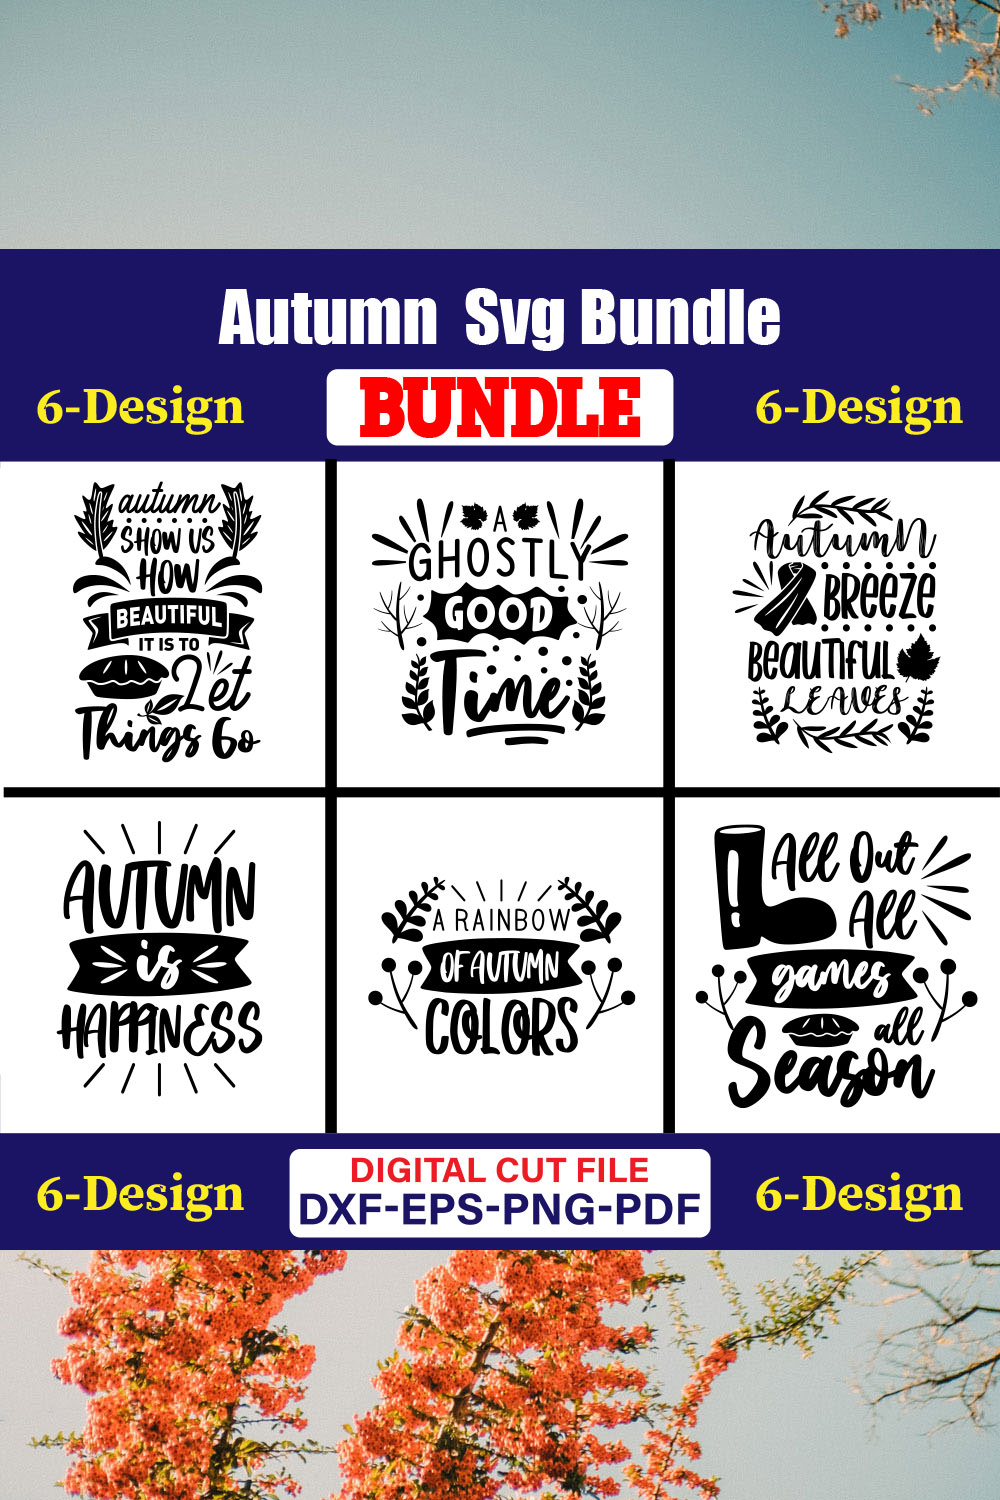 Autumn SVG T-shirt Design Bundle Vol-01 pinterest preview image.